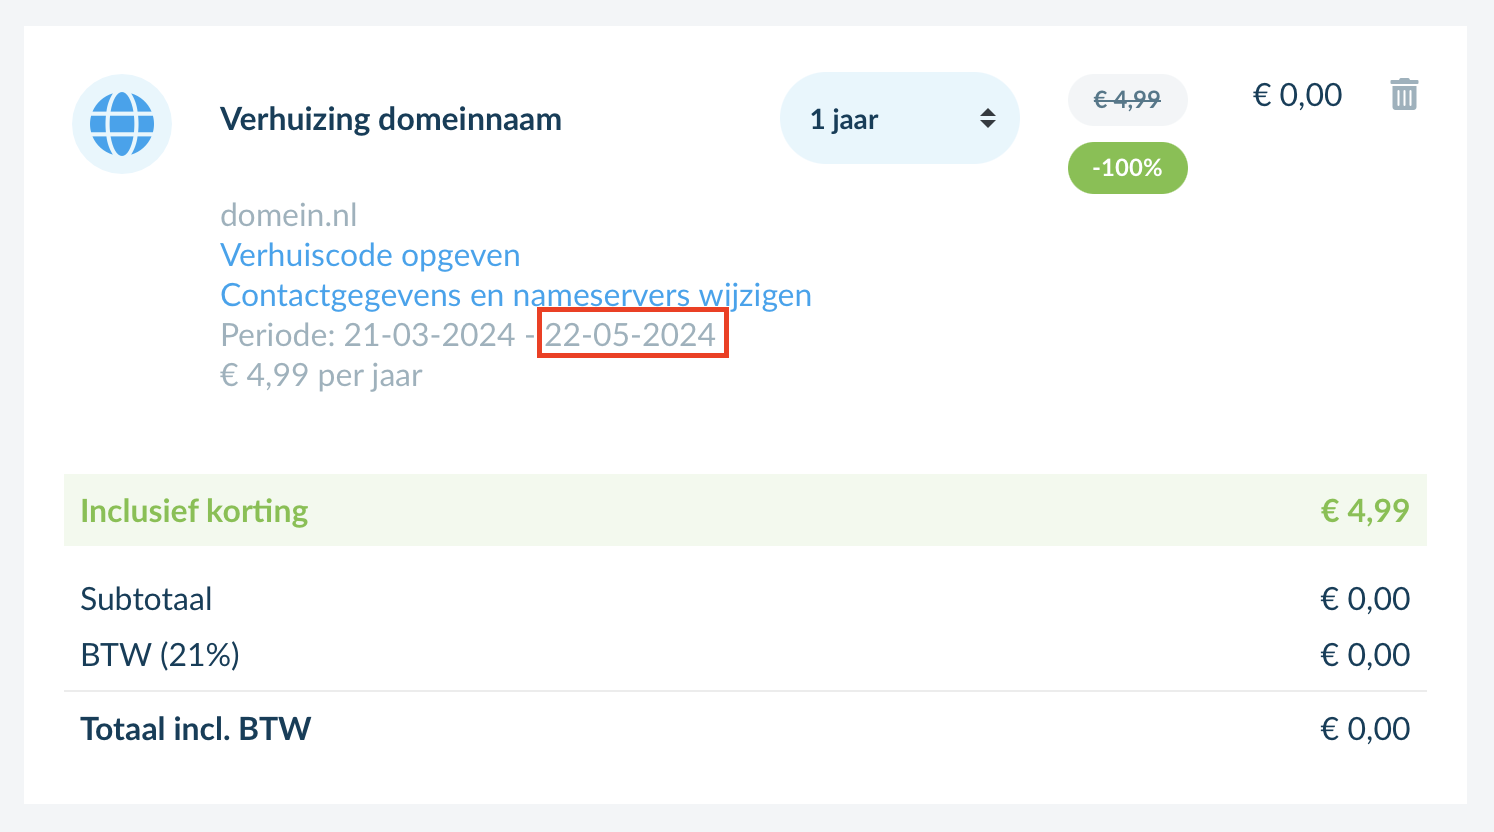 Voorbeeld van de vervaldatum van een .nl domeinnaam